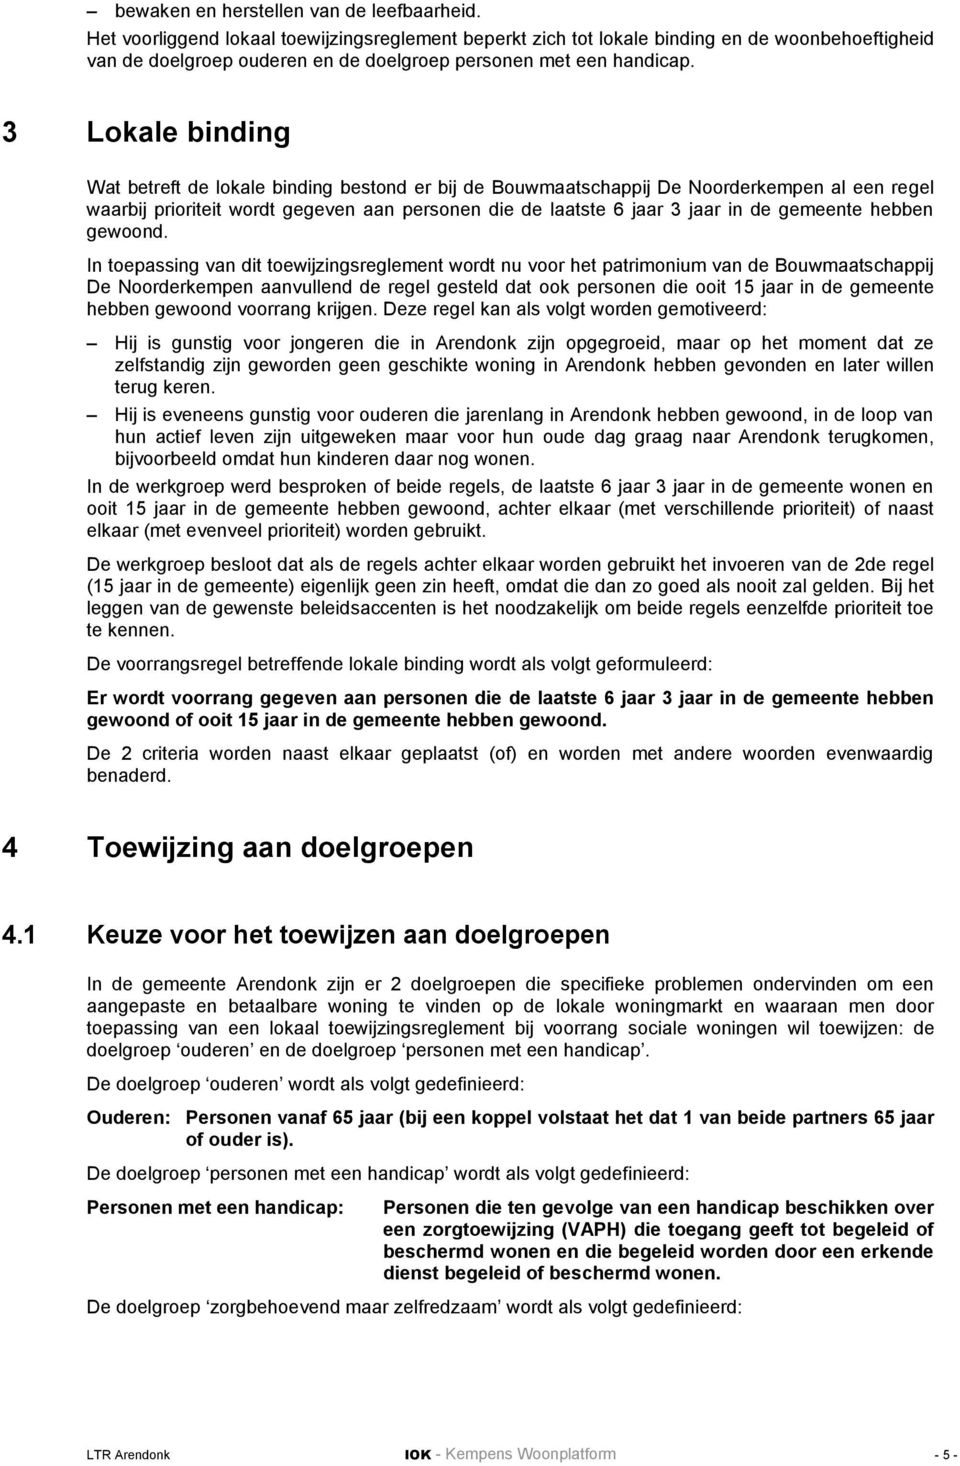 3 Lokale binding Wat betreft de lokale binding bestond er bij de Bouwmaatschappij De Noorderkempen al een regel waarbij prioriteit wordt gegeven aan personen die de laatste 6 jaar 3 jaar in de